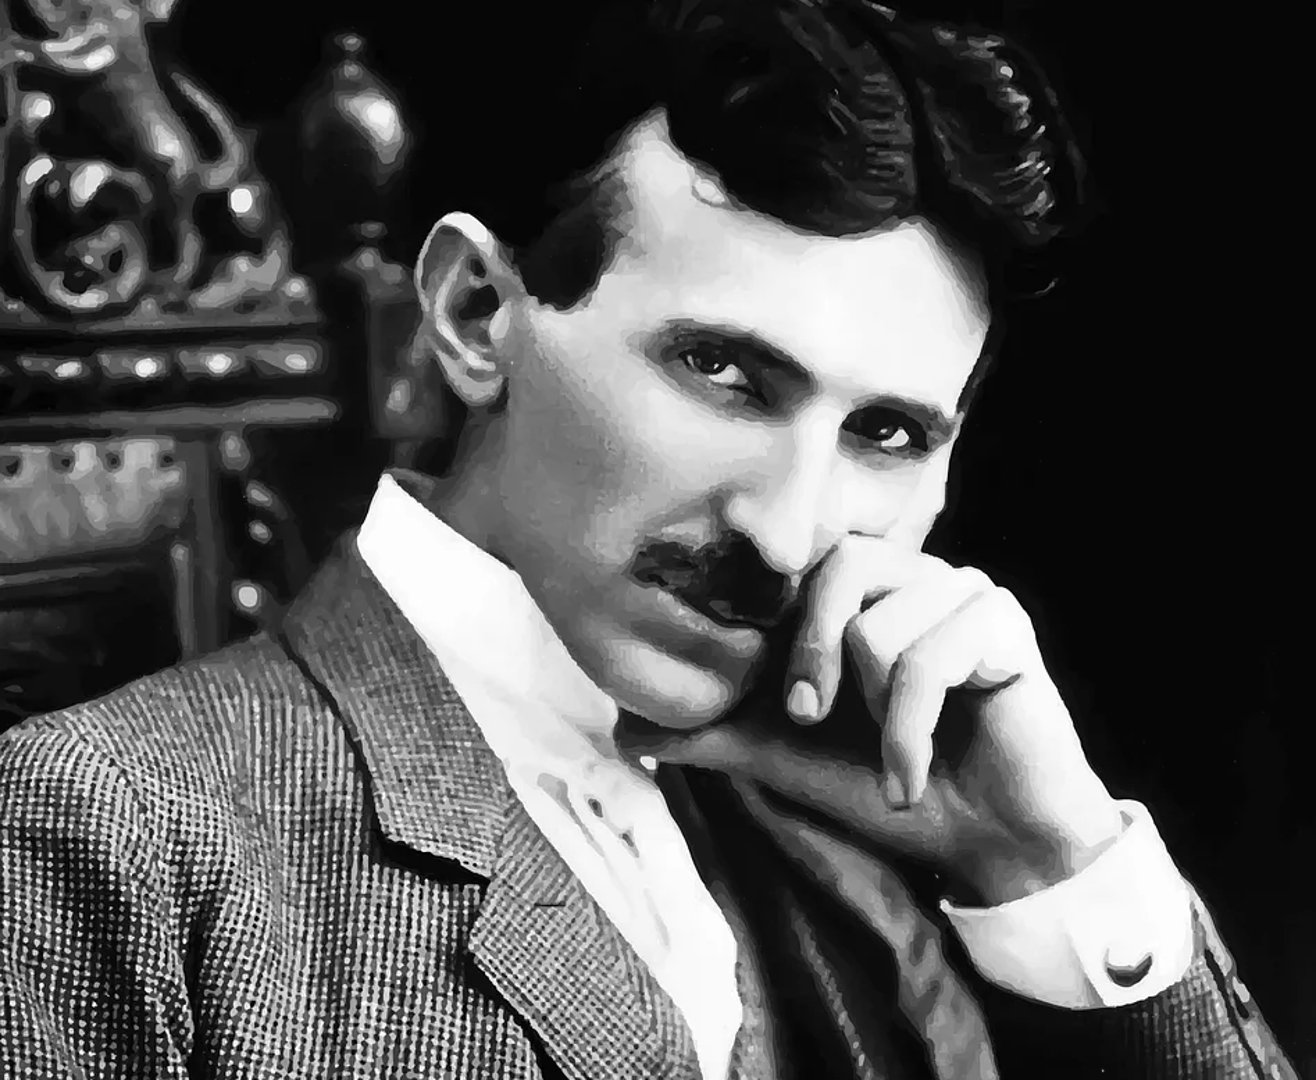 19. U Smiljanu je rođen Nikola Tesla, čime je Hrvatska rodno mjesto jednog od najvećih izumitelja i elektrotehničara.